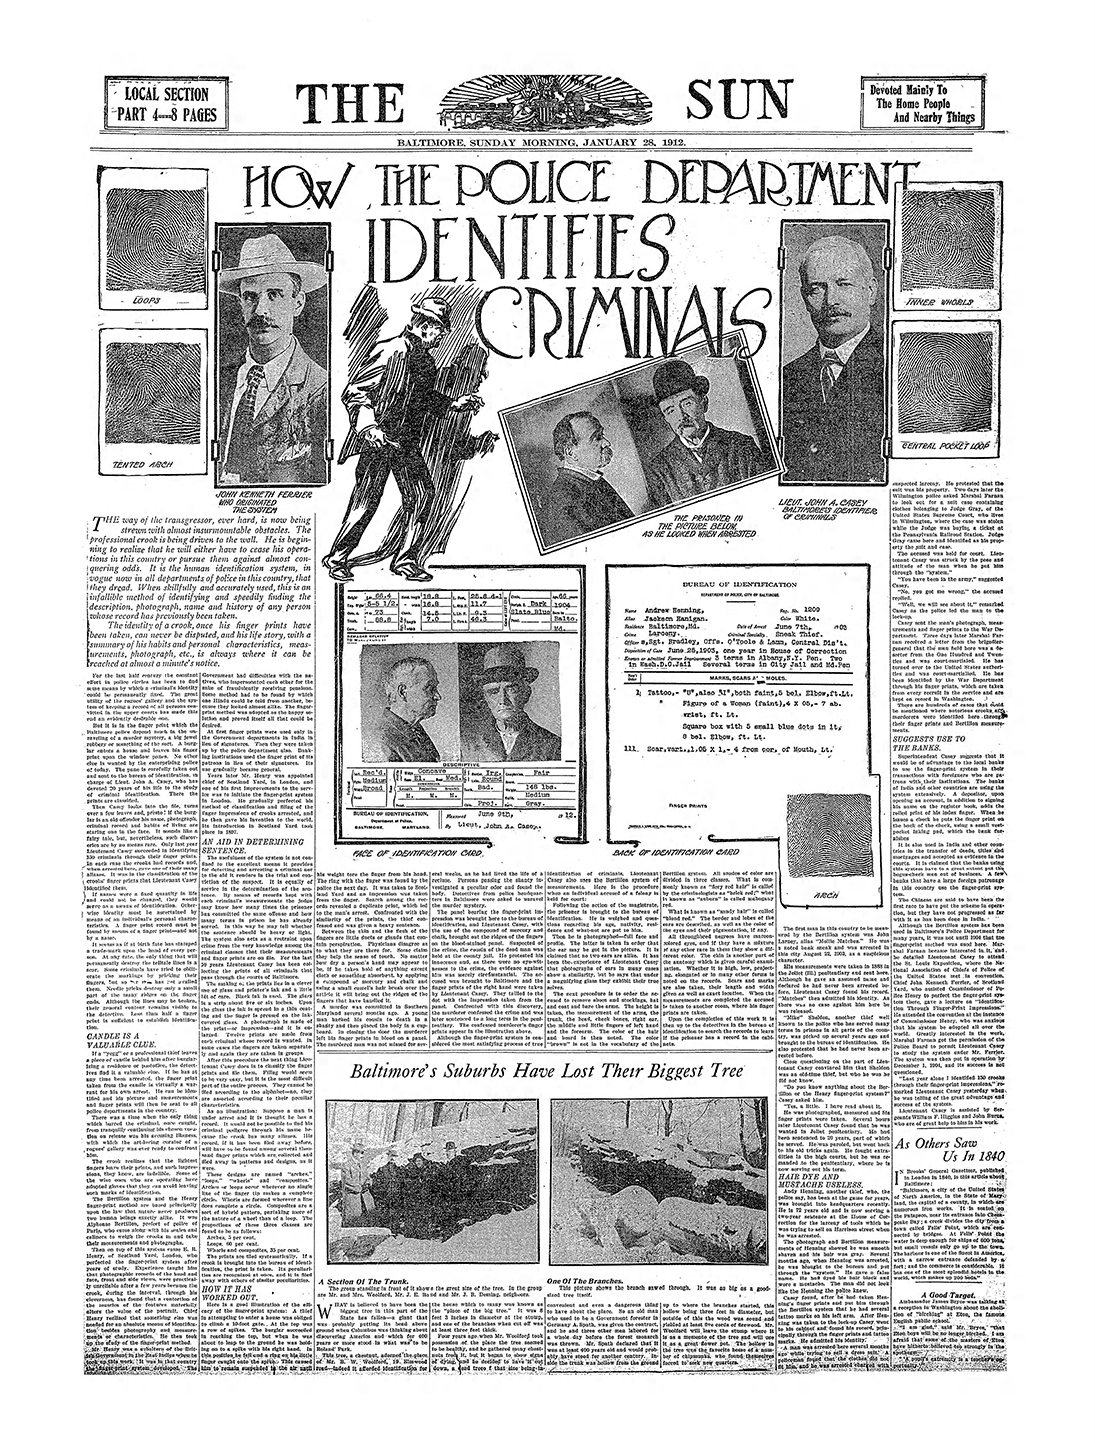 The Baltimore Sun Sun Jan 28 1912 72